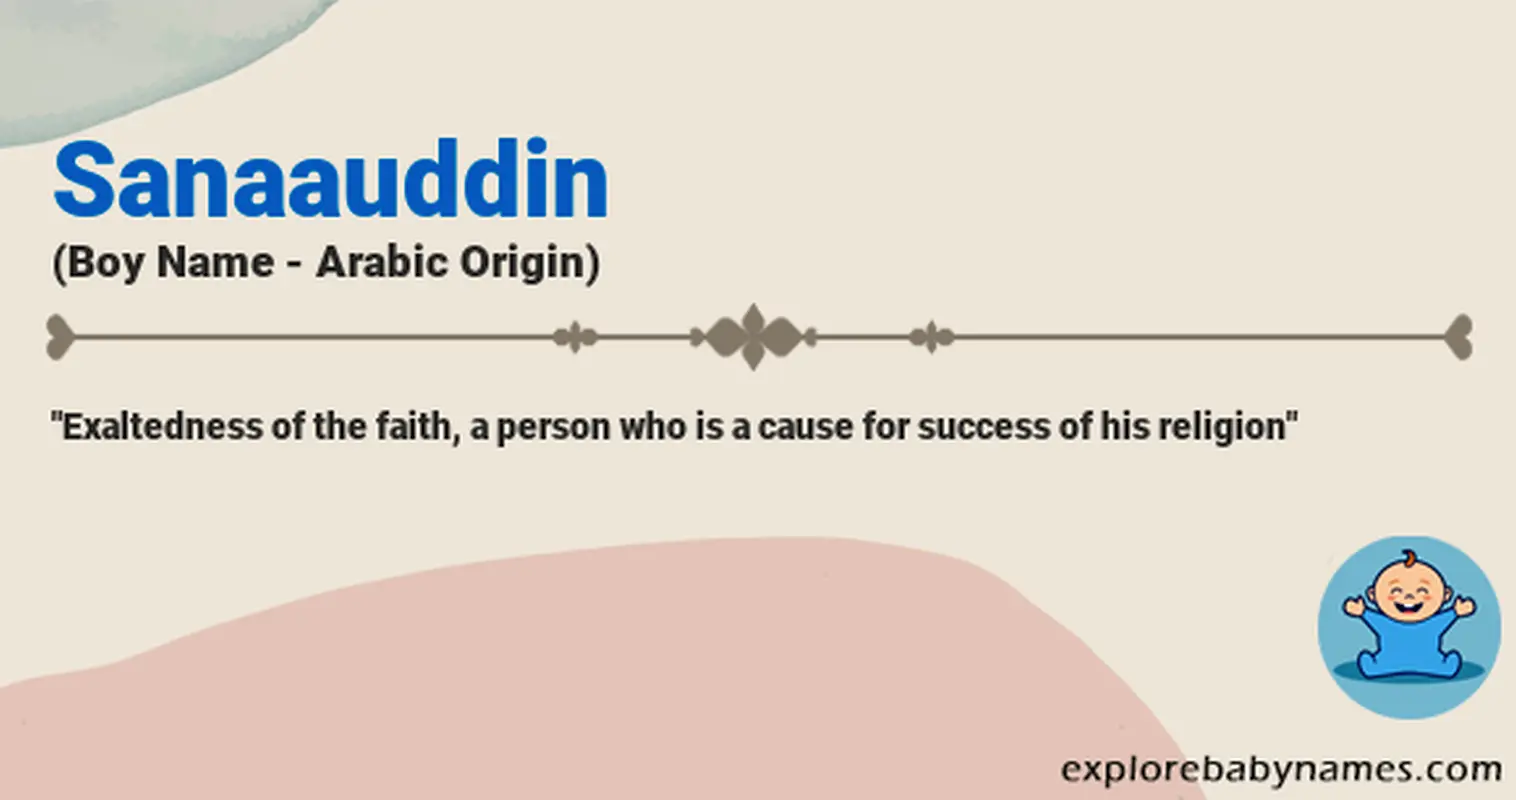 Meaning of Sanaauddin